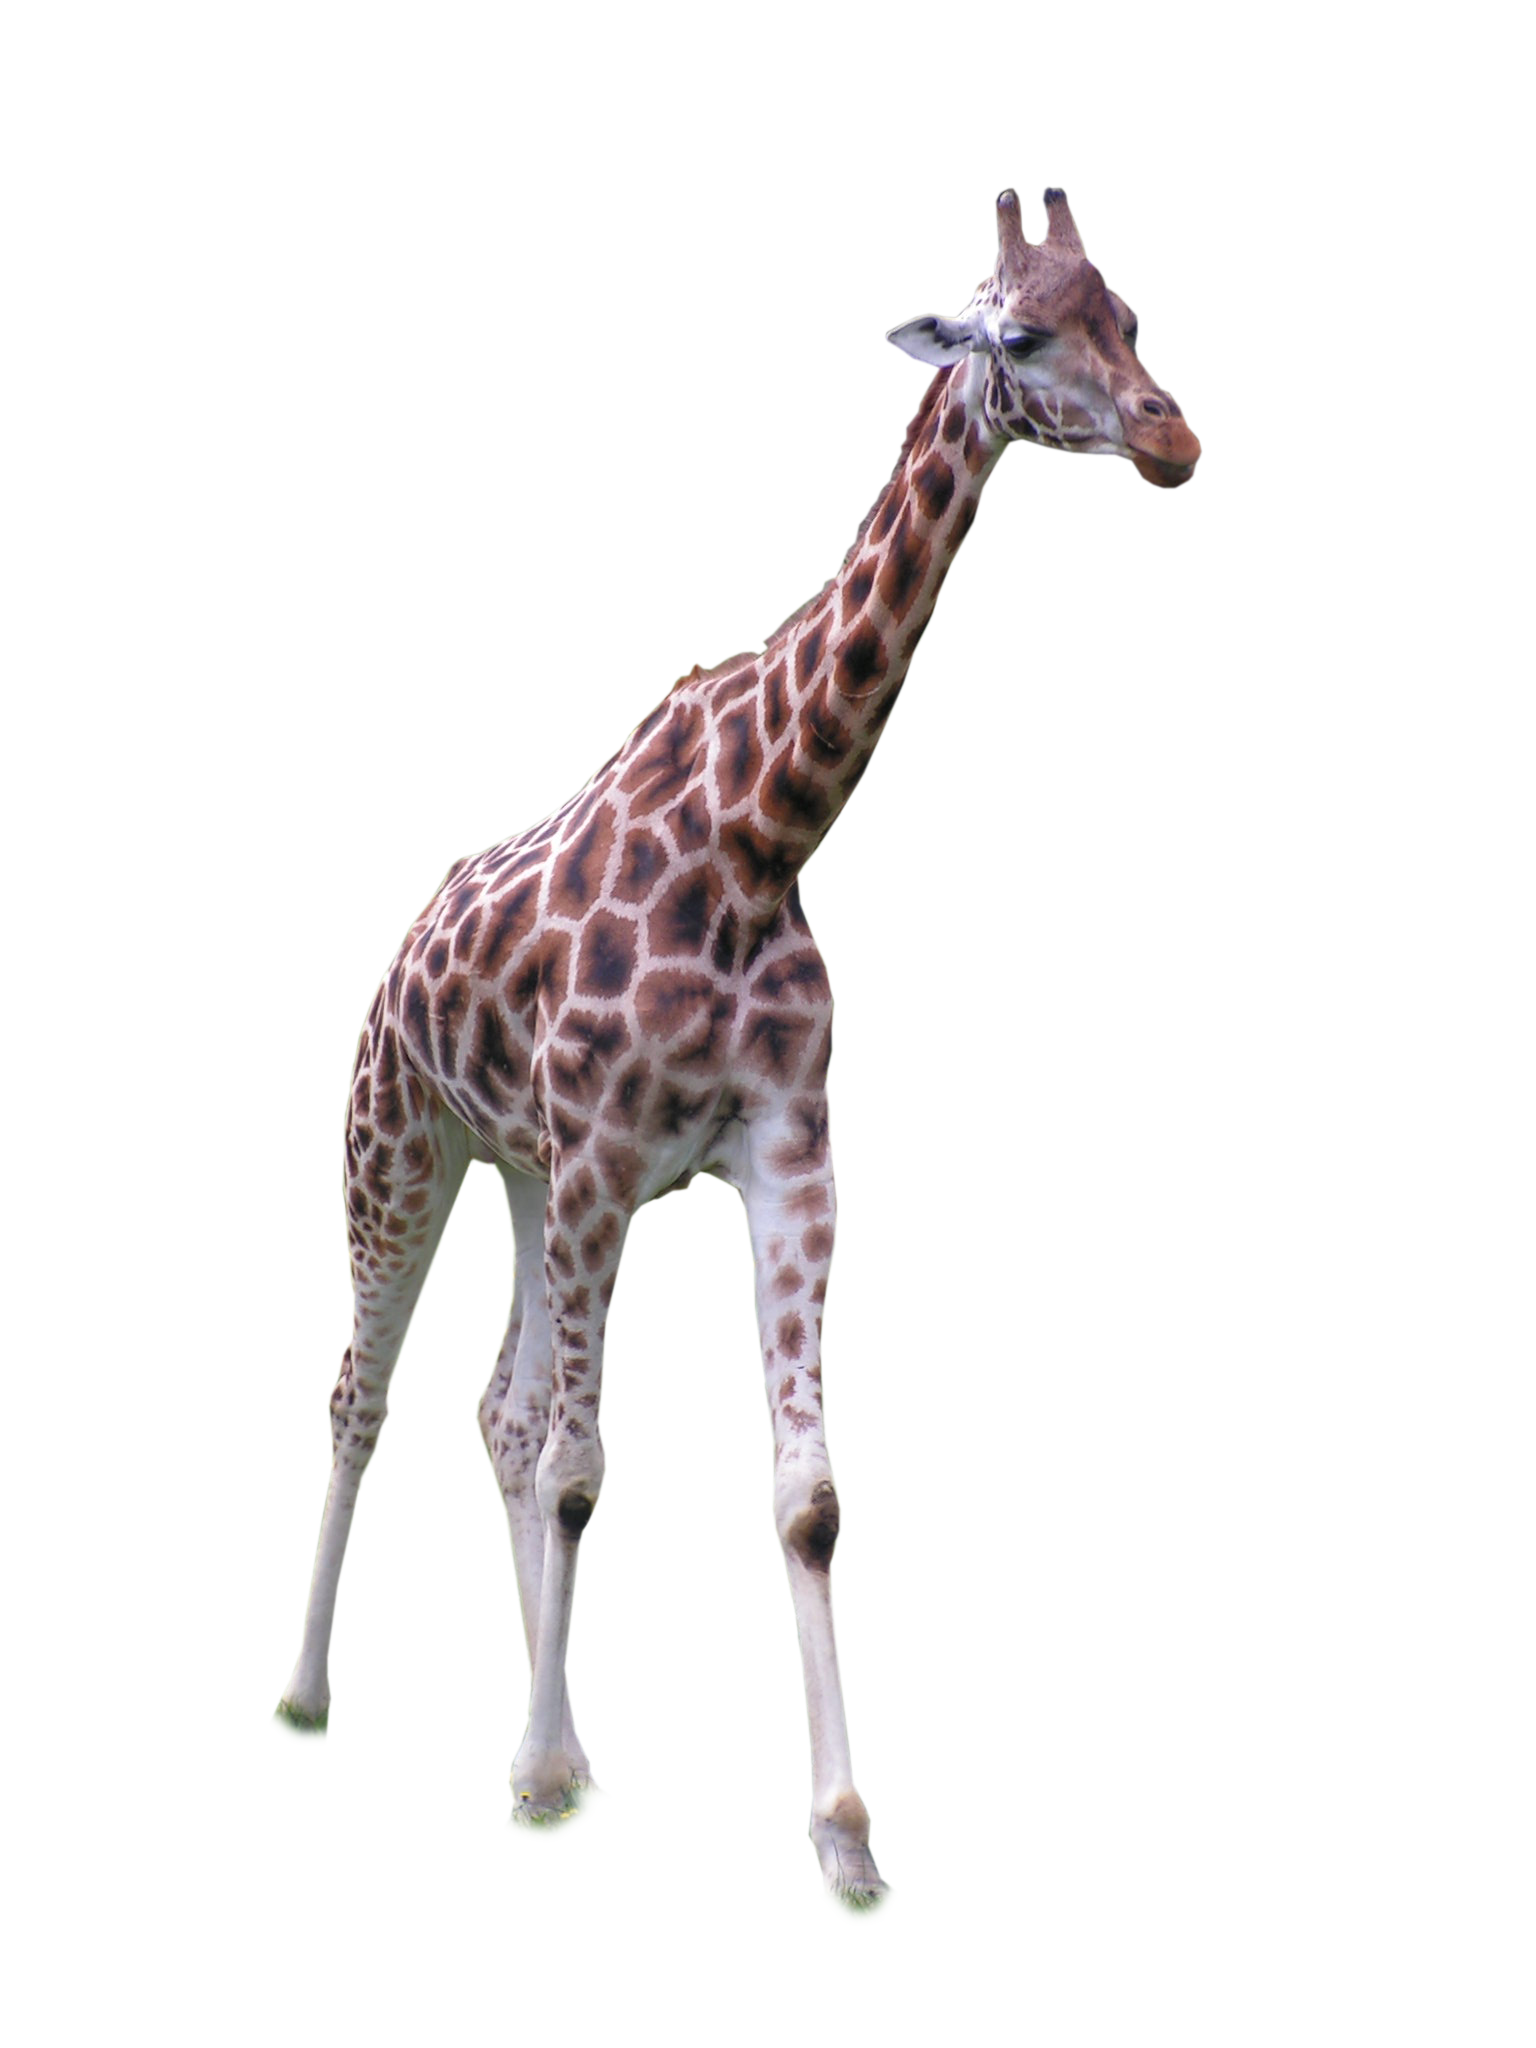 Girafe PNG Image HQ